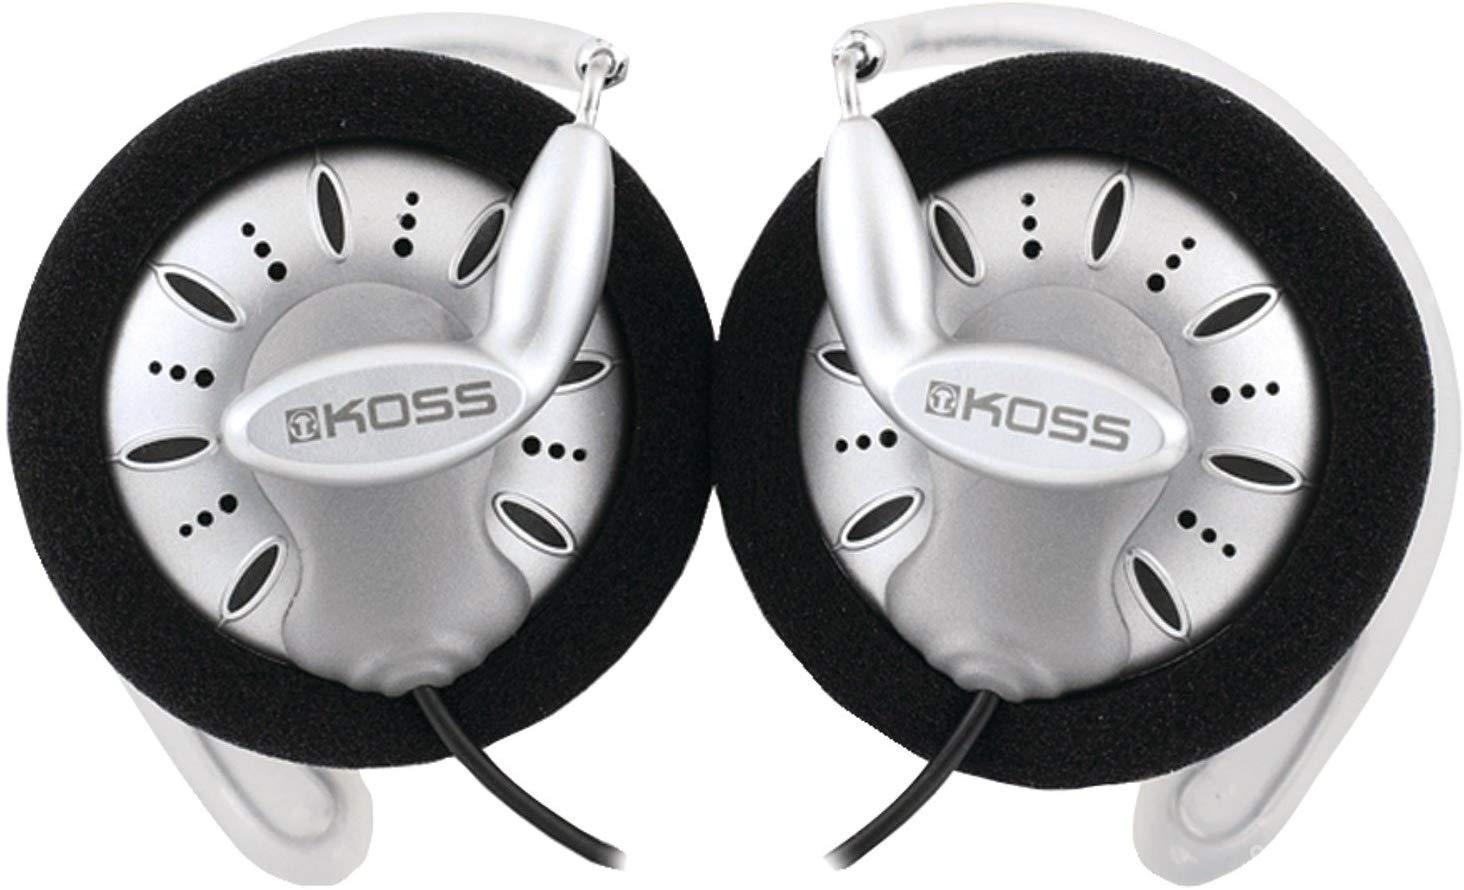 Best wireless headphones for traveling: Koss KSC75